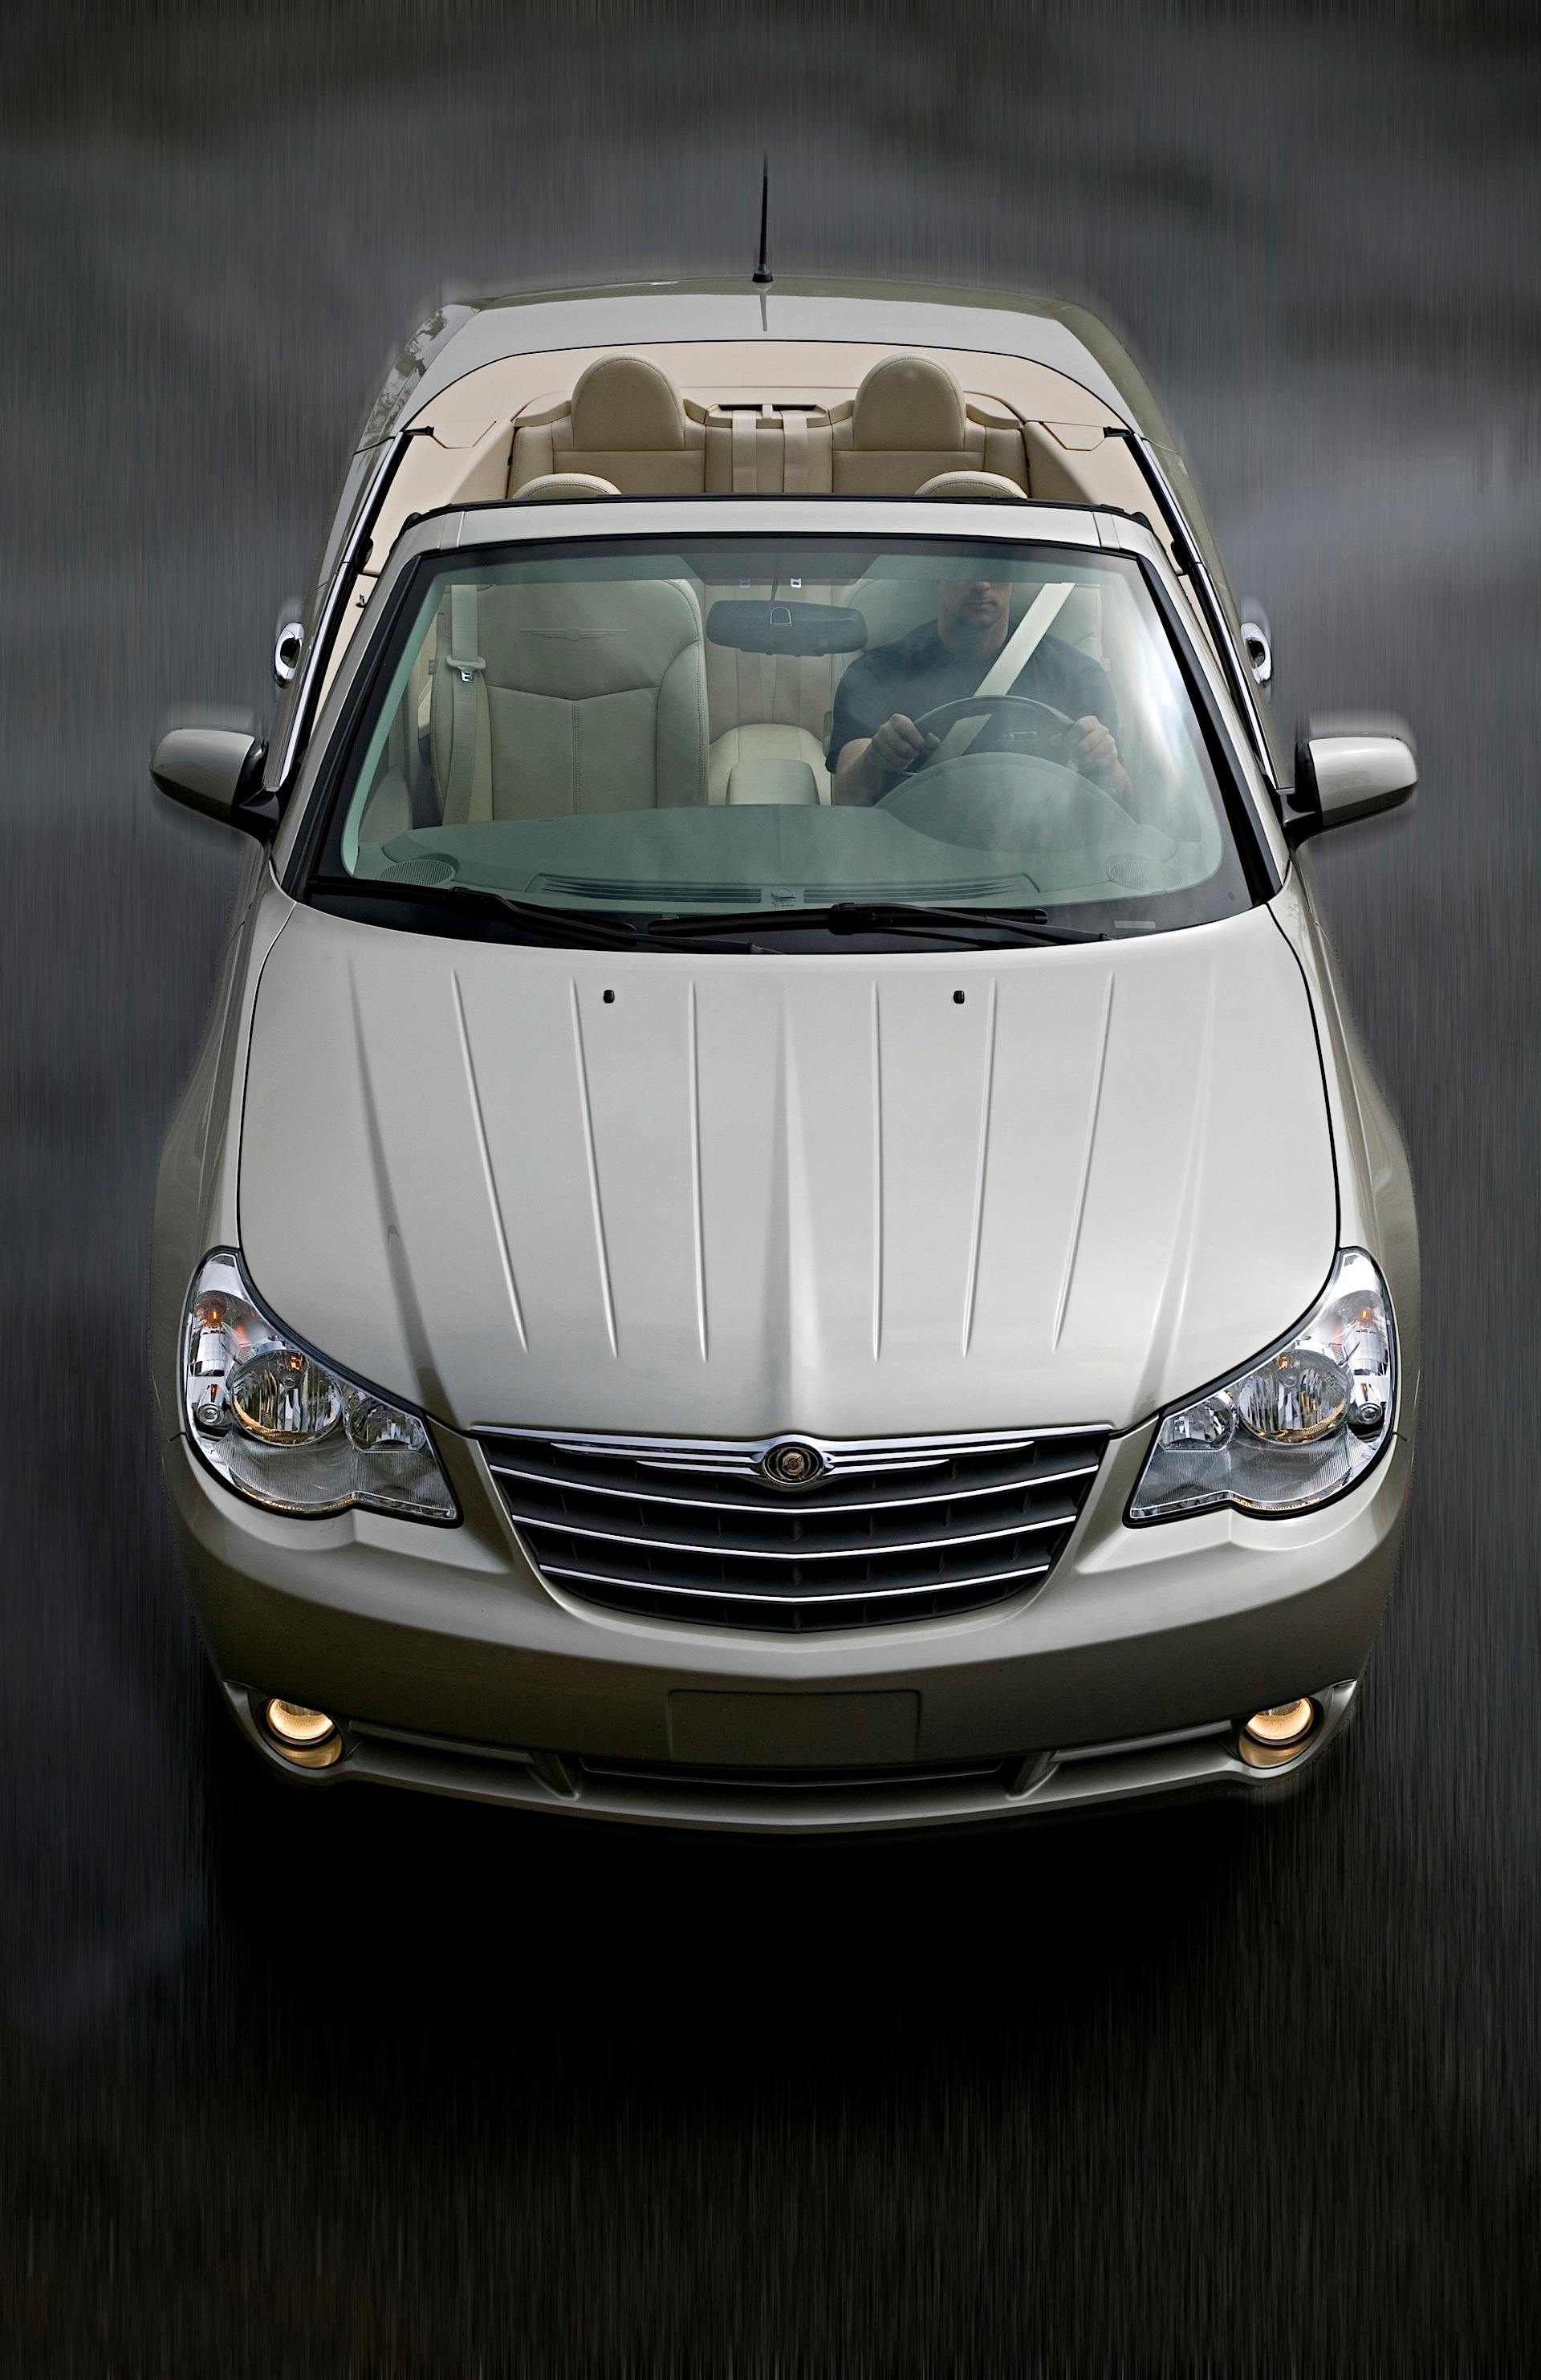 2010 Chrysler sebring consumer reviews #5